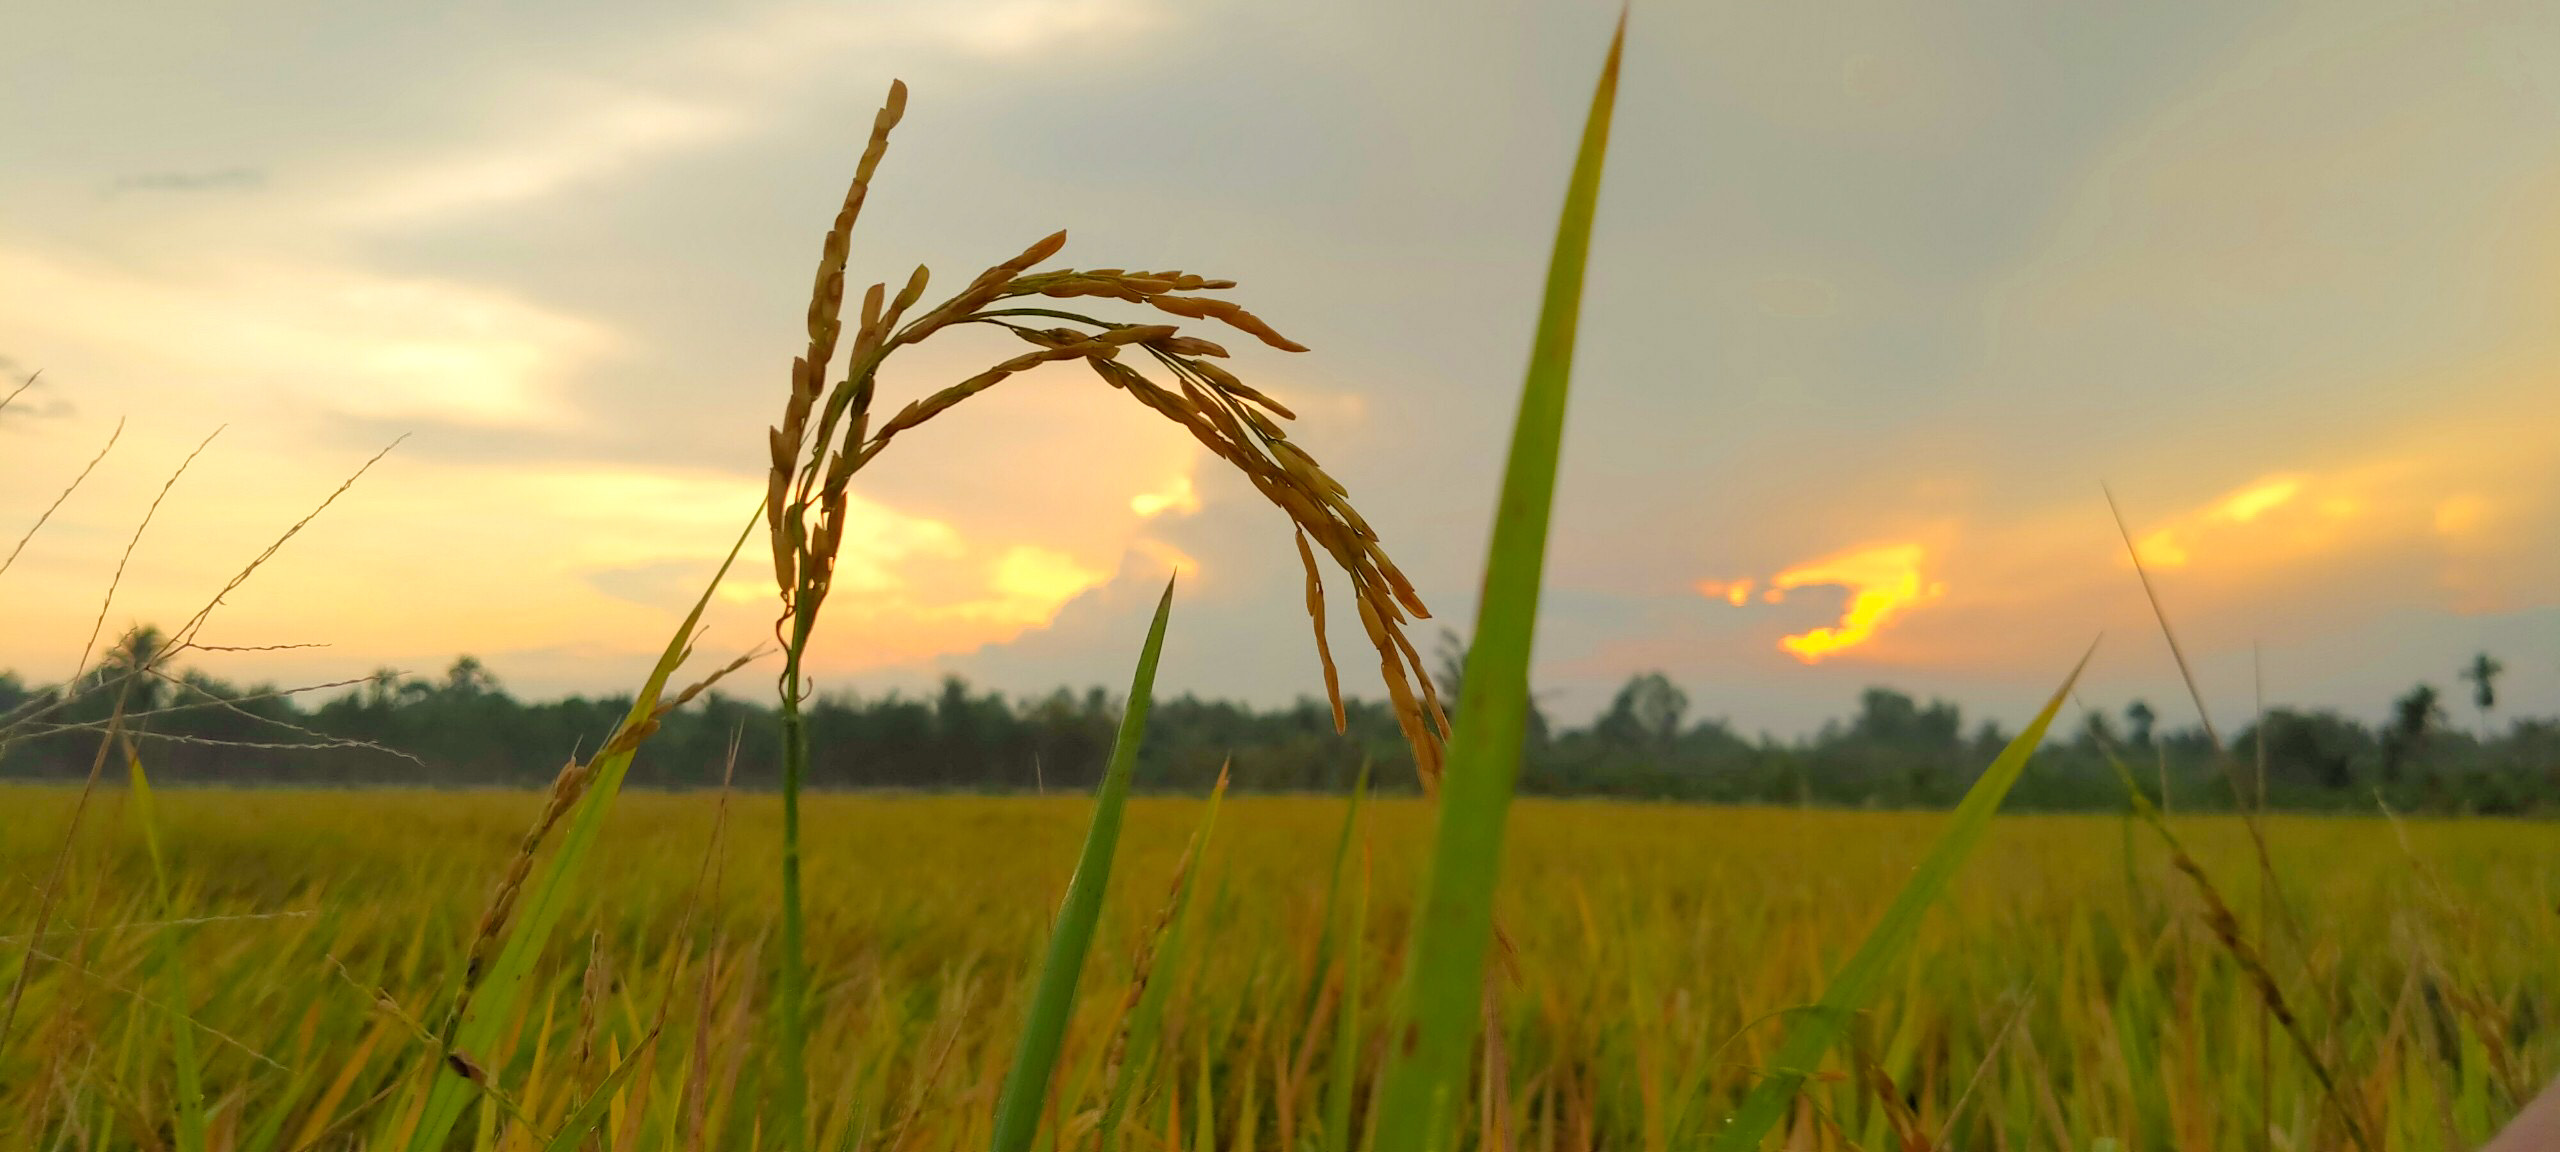 Những cánh đồng lúa rộng lớn tuyệt đẹp đang chờ bạn khám phá trong hoàng hôn. Hãy tưởng tượng một cảnh tượng mênh mang với những hàng lúa chín vàng đang chờ đợi để được hái. Hình ảnh này sẽ mang lại cho bạn một cảm giác thanh thản và sự đơn giản đẹp đẽ của đồng quê Việt Nam.